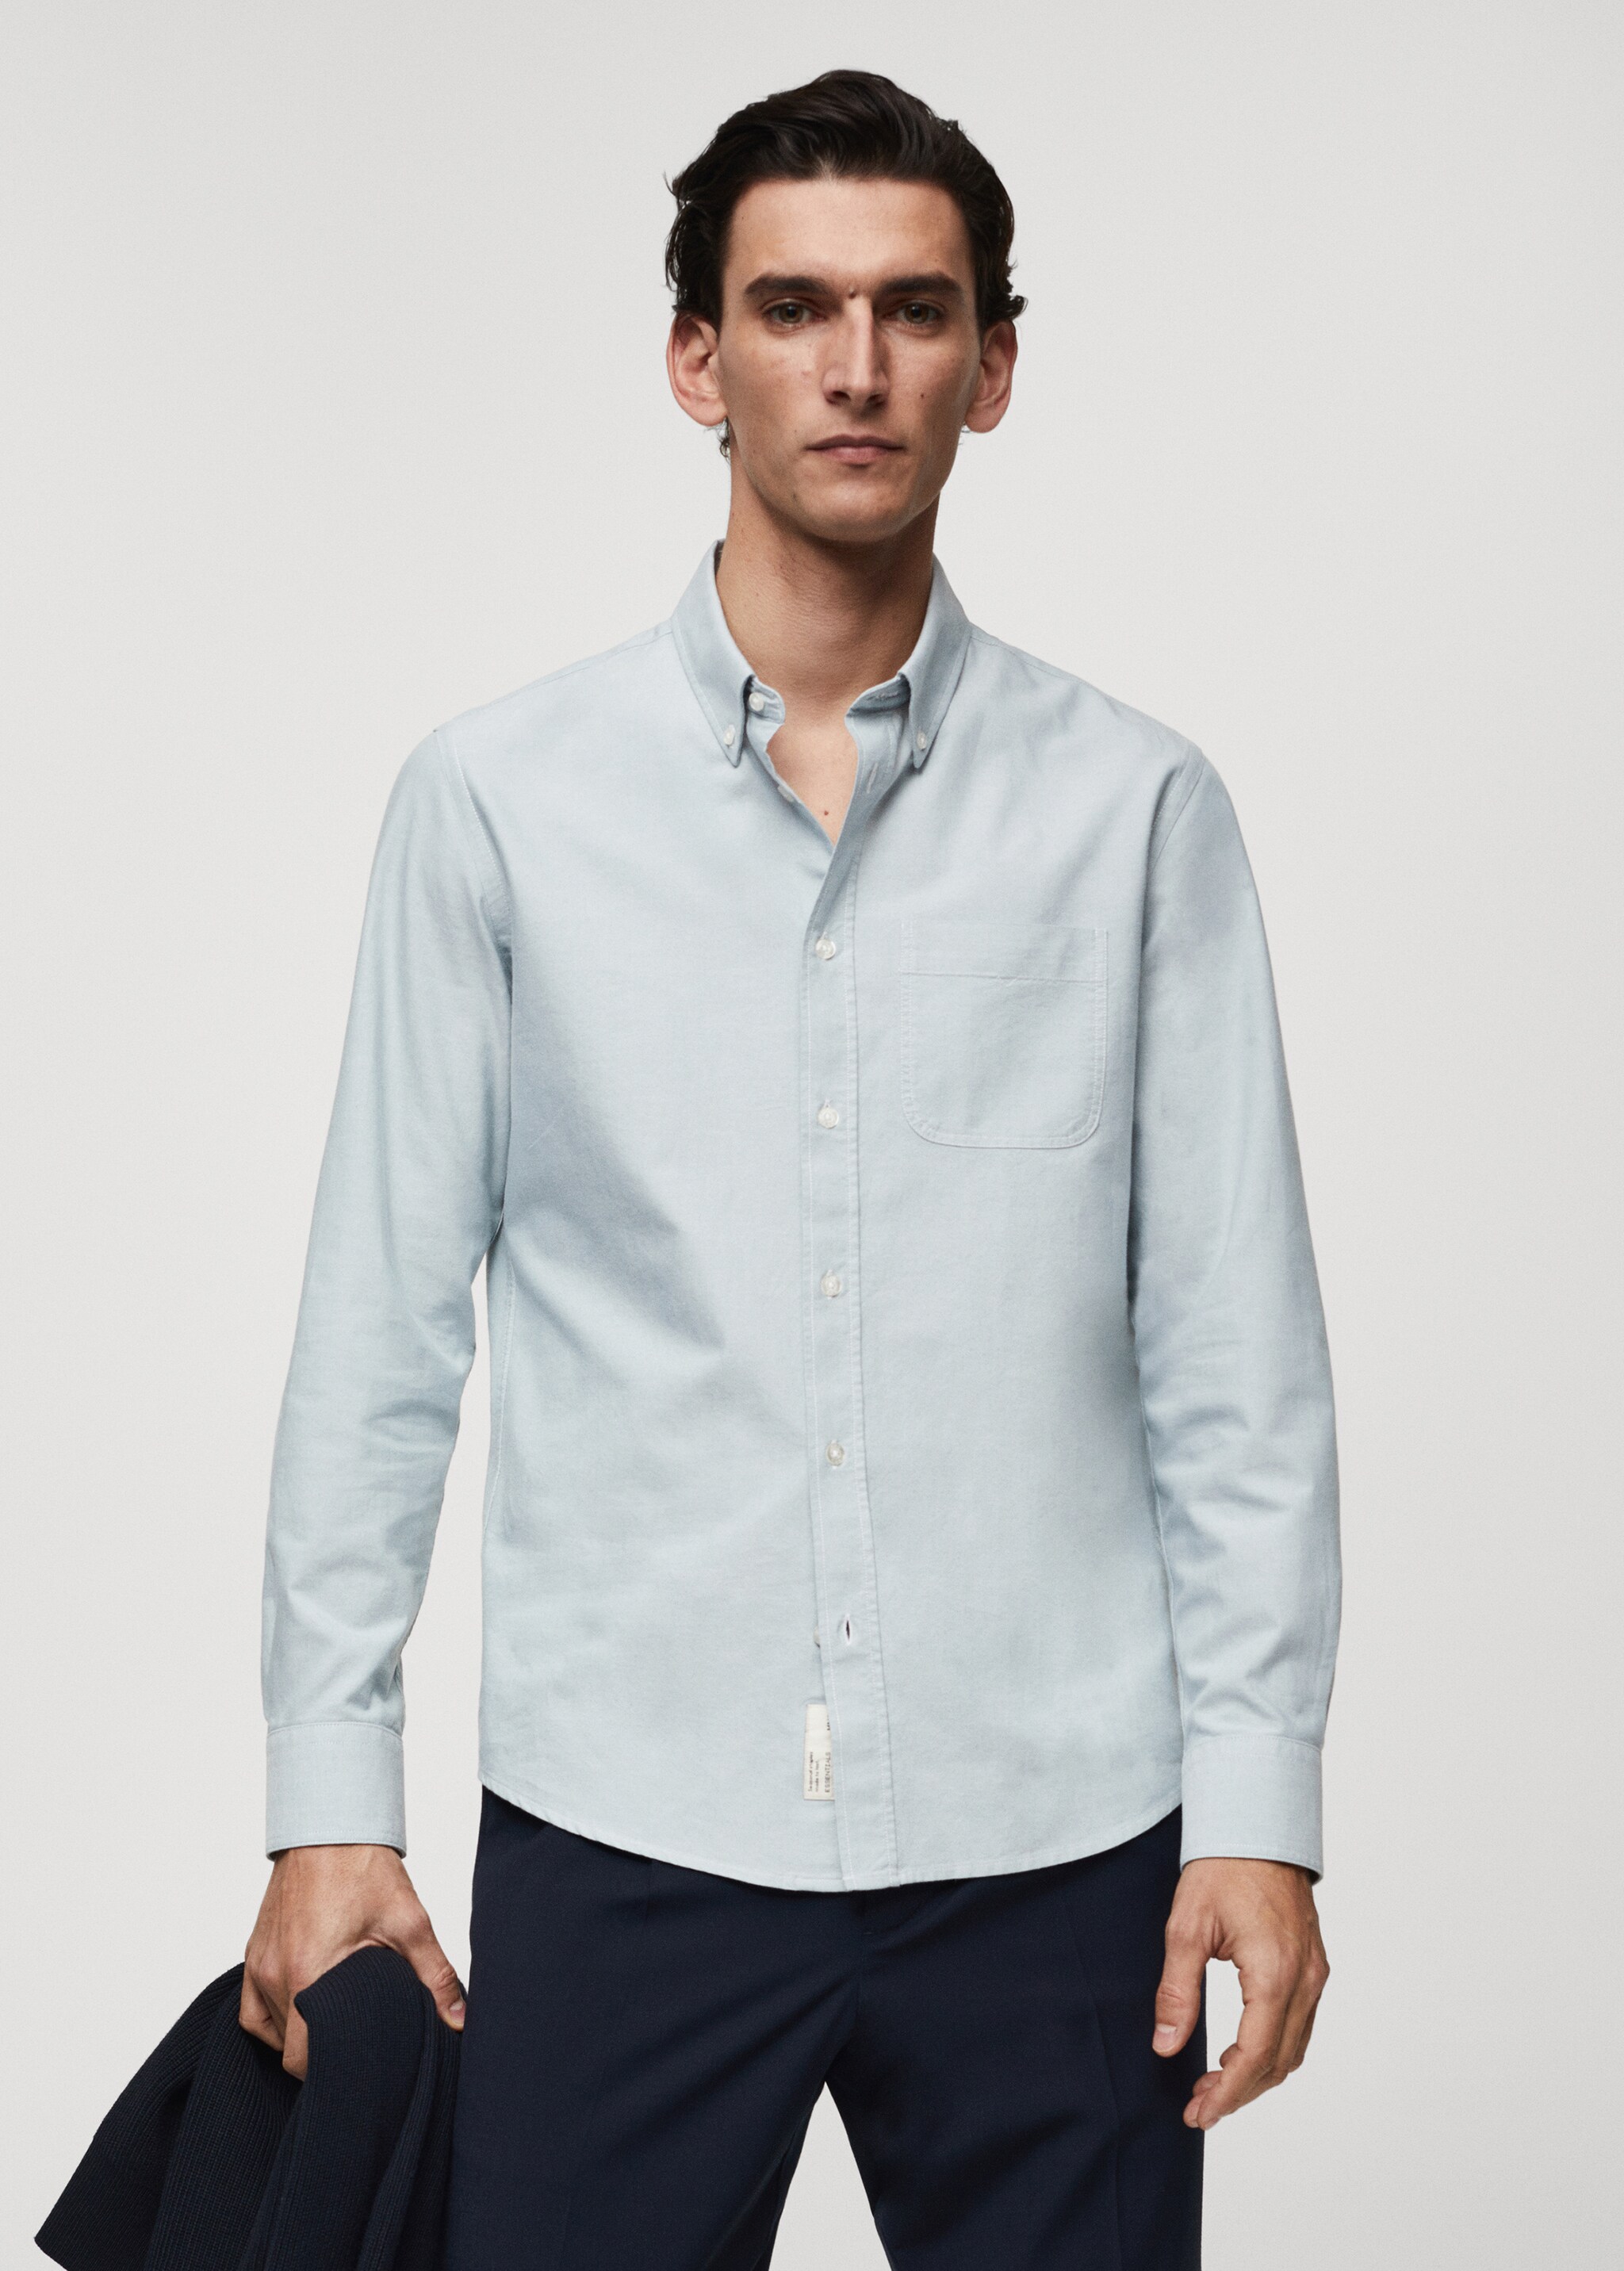 Camisa Oxford regular fit de algodão - Plano médio